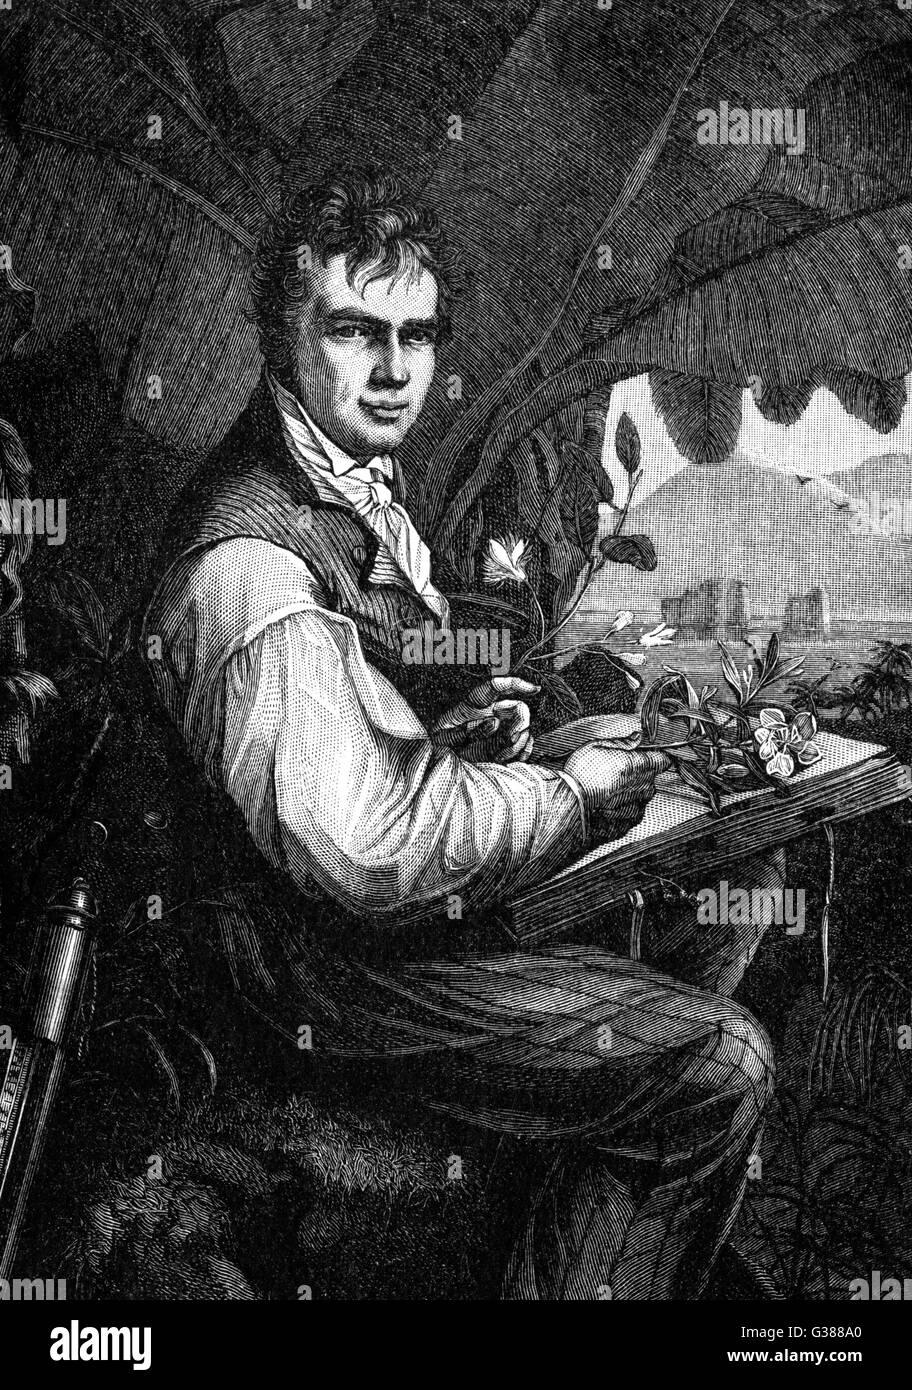 Le scientifique allemand ALEXANDER VON HUMBOLDT et voyageur représenté durant son voyage en Amérique du Sud, vers 1800 Date : 1769 - 1859 Banque D'Images